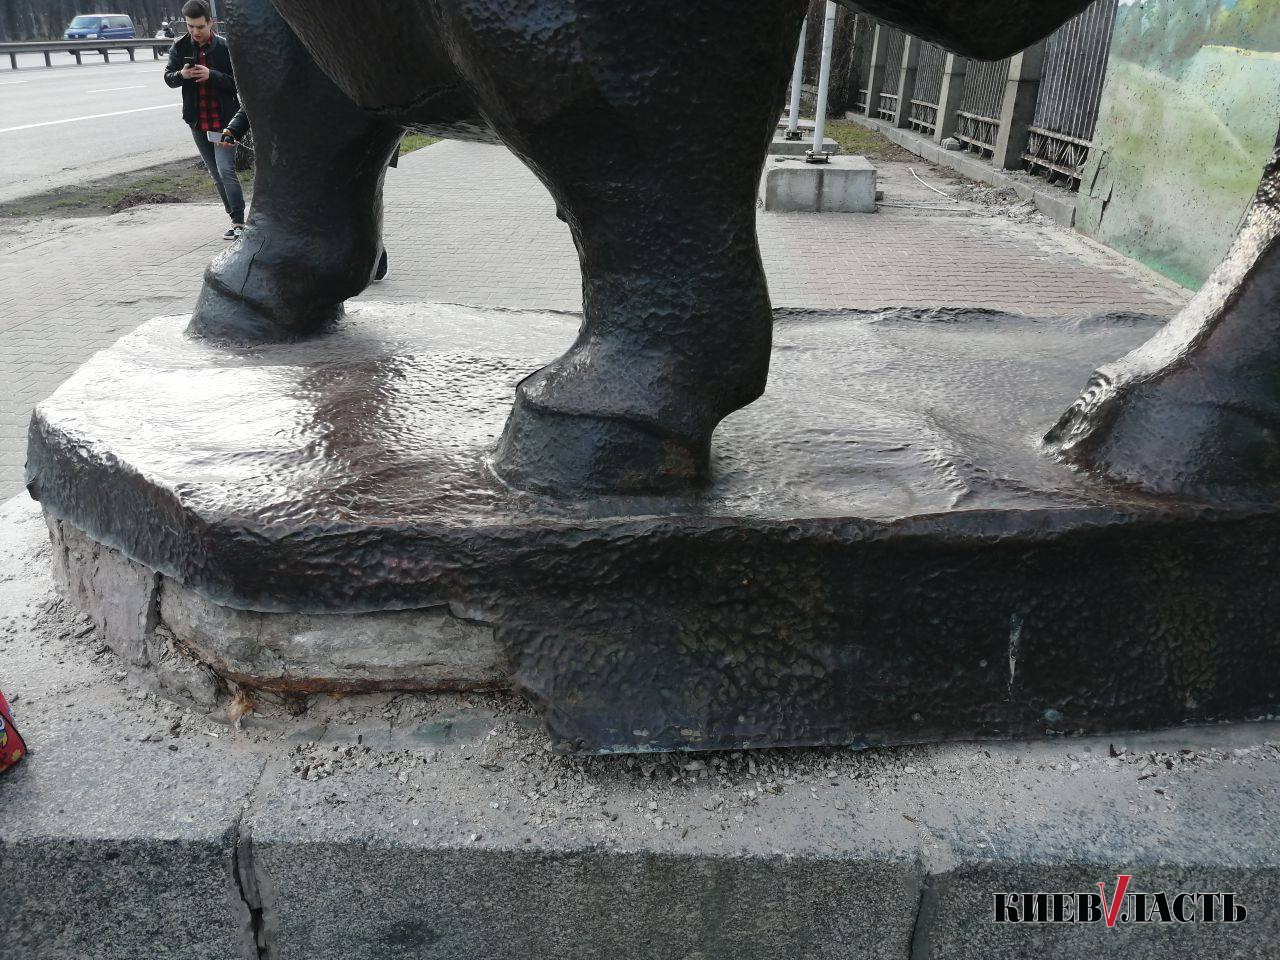 От статуи бизона возле Киевского зоопарка начали отпиливать фрагменты (фото)